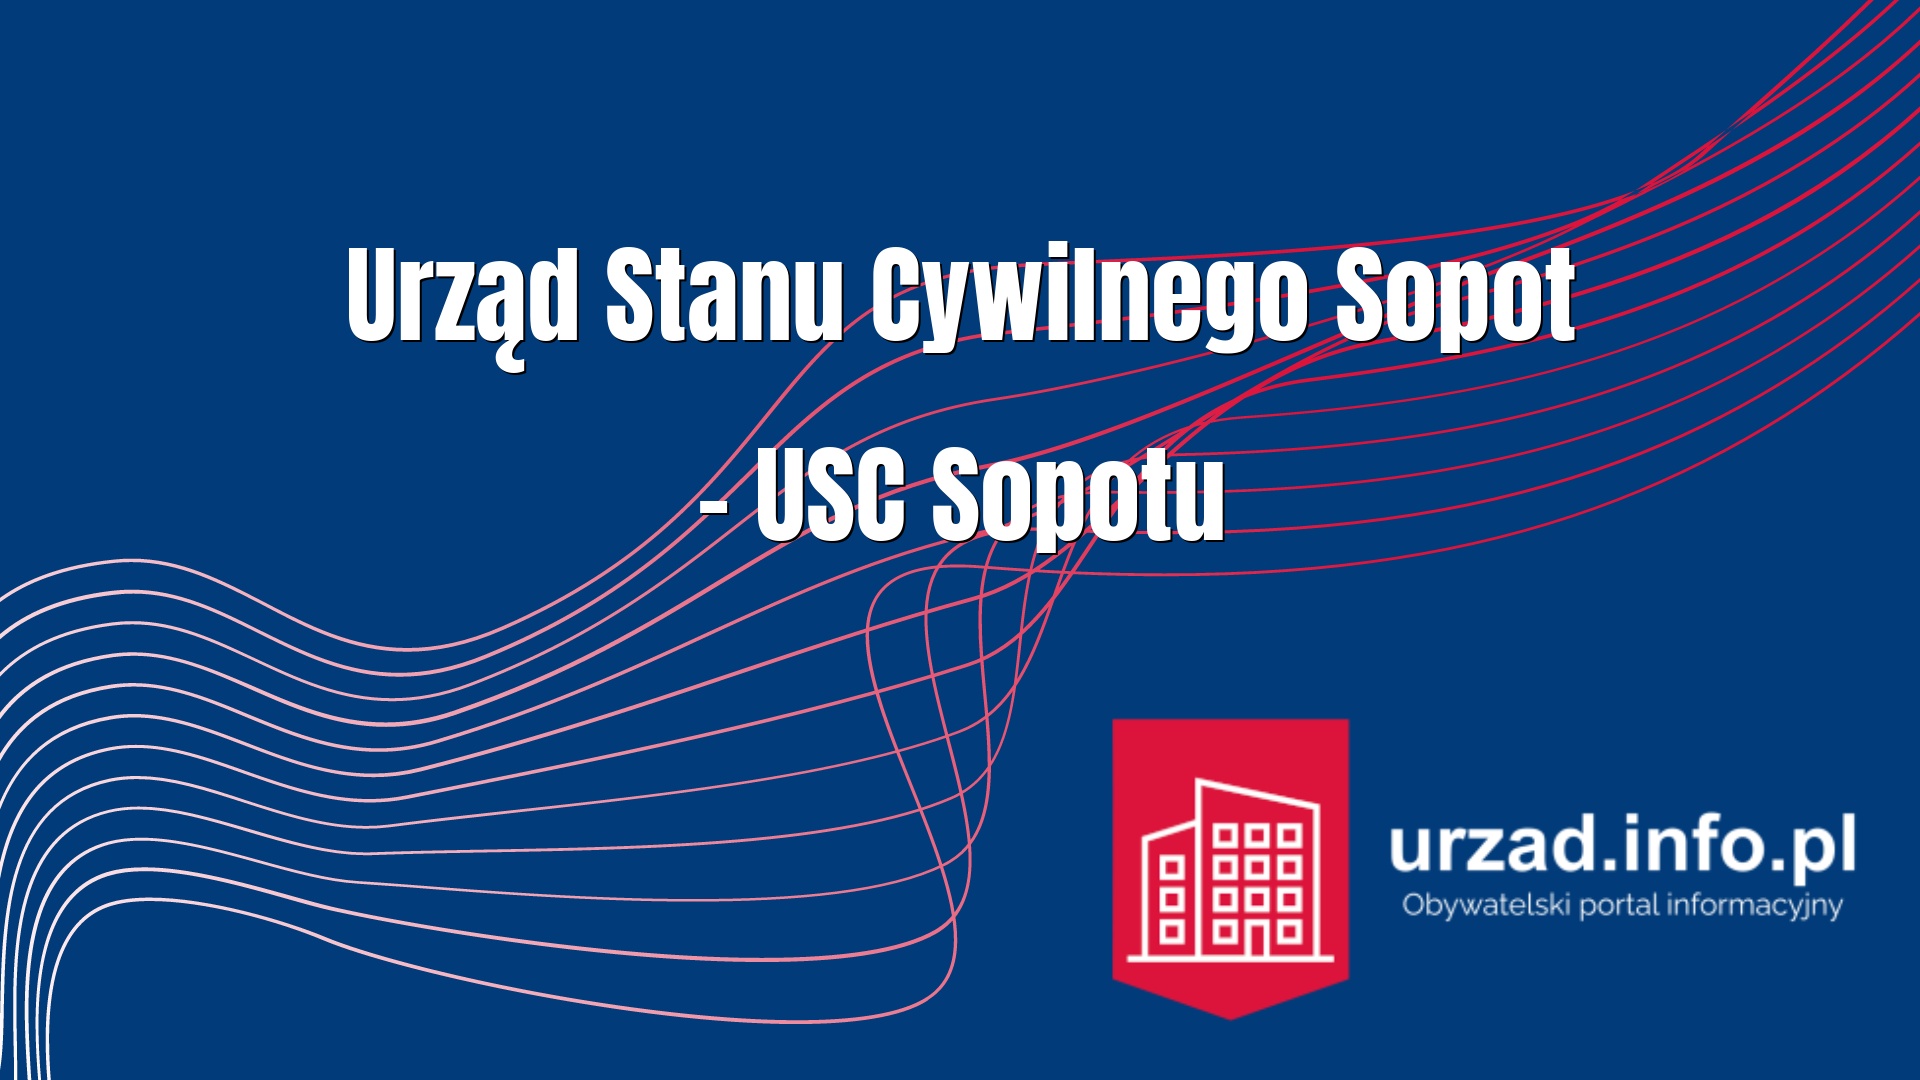 Urząd Stanu Cywilnego Sopot – USC Sopotu